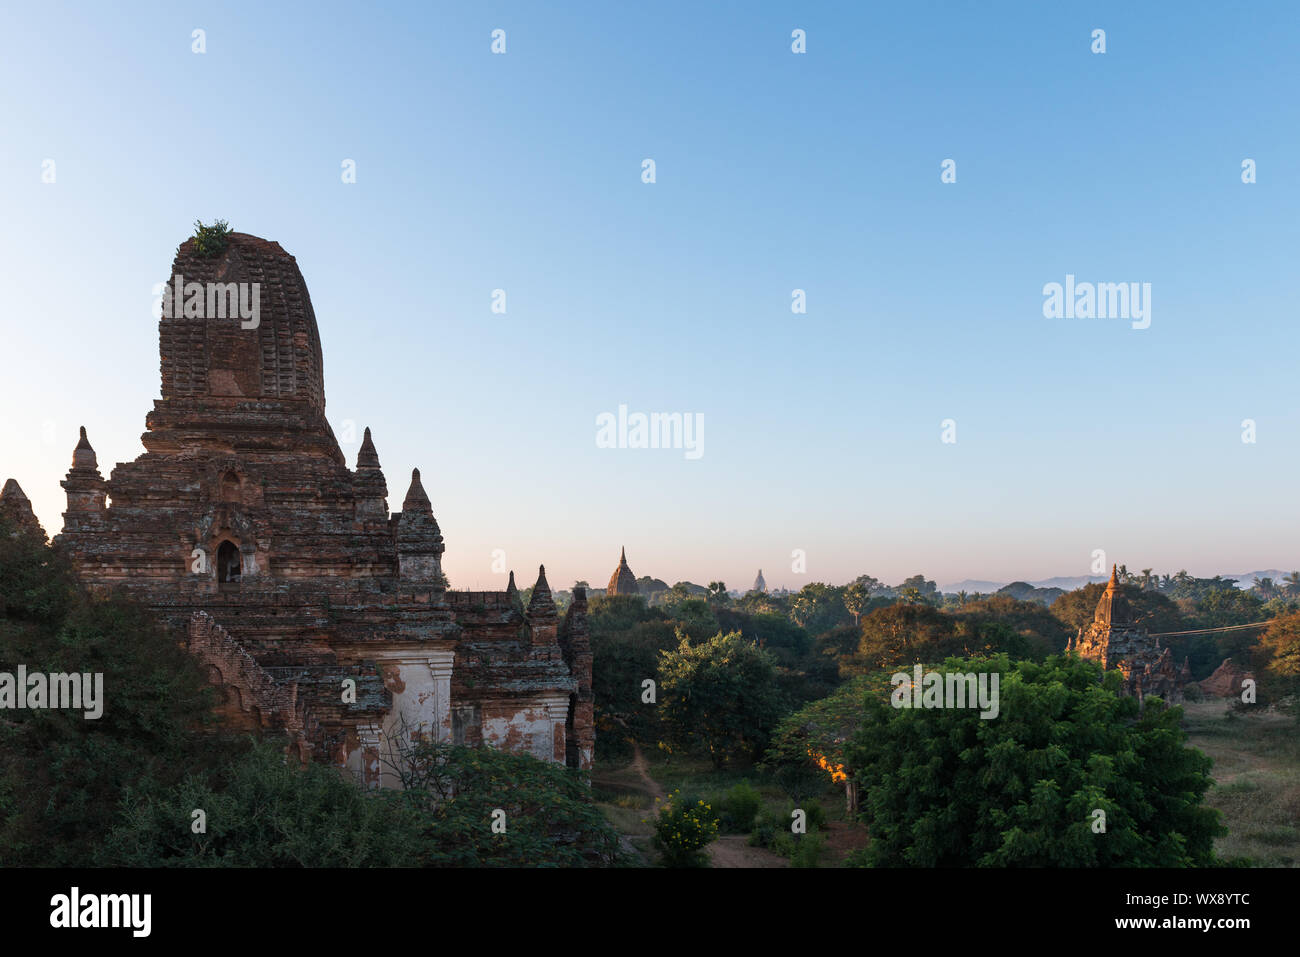 Ampio angolo di immagine di enorme e vecchia pagoda buddista situato nel parco archeologico di Bagan in Myanmar Foto Stock